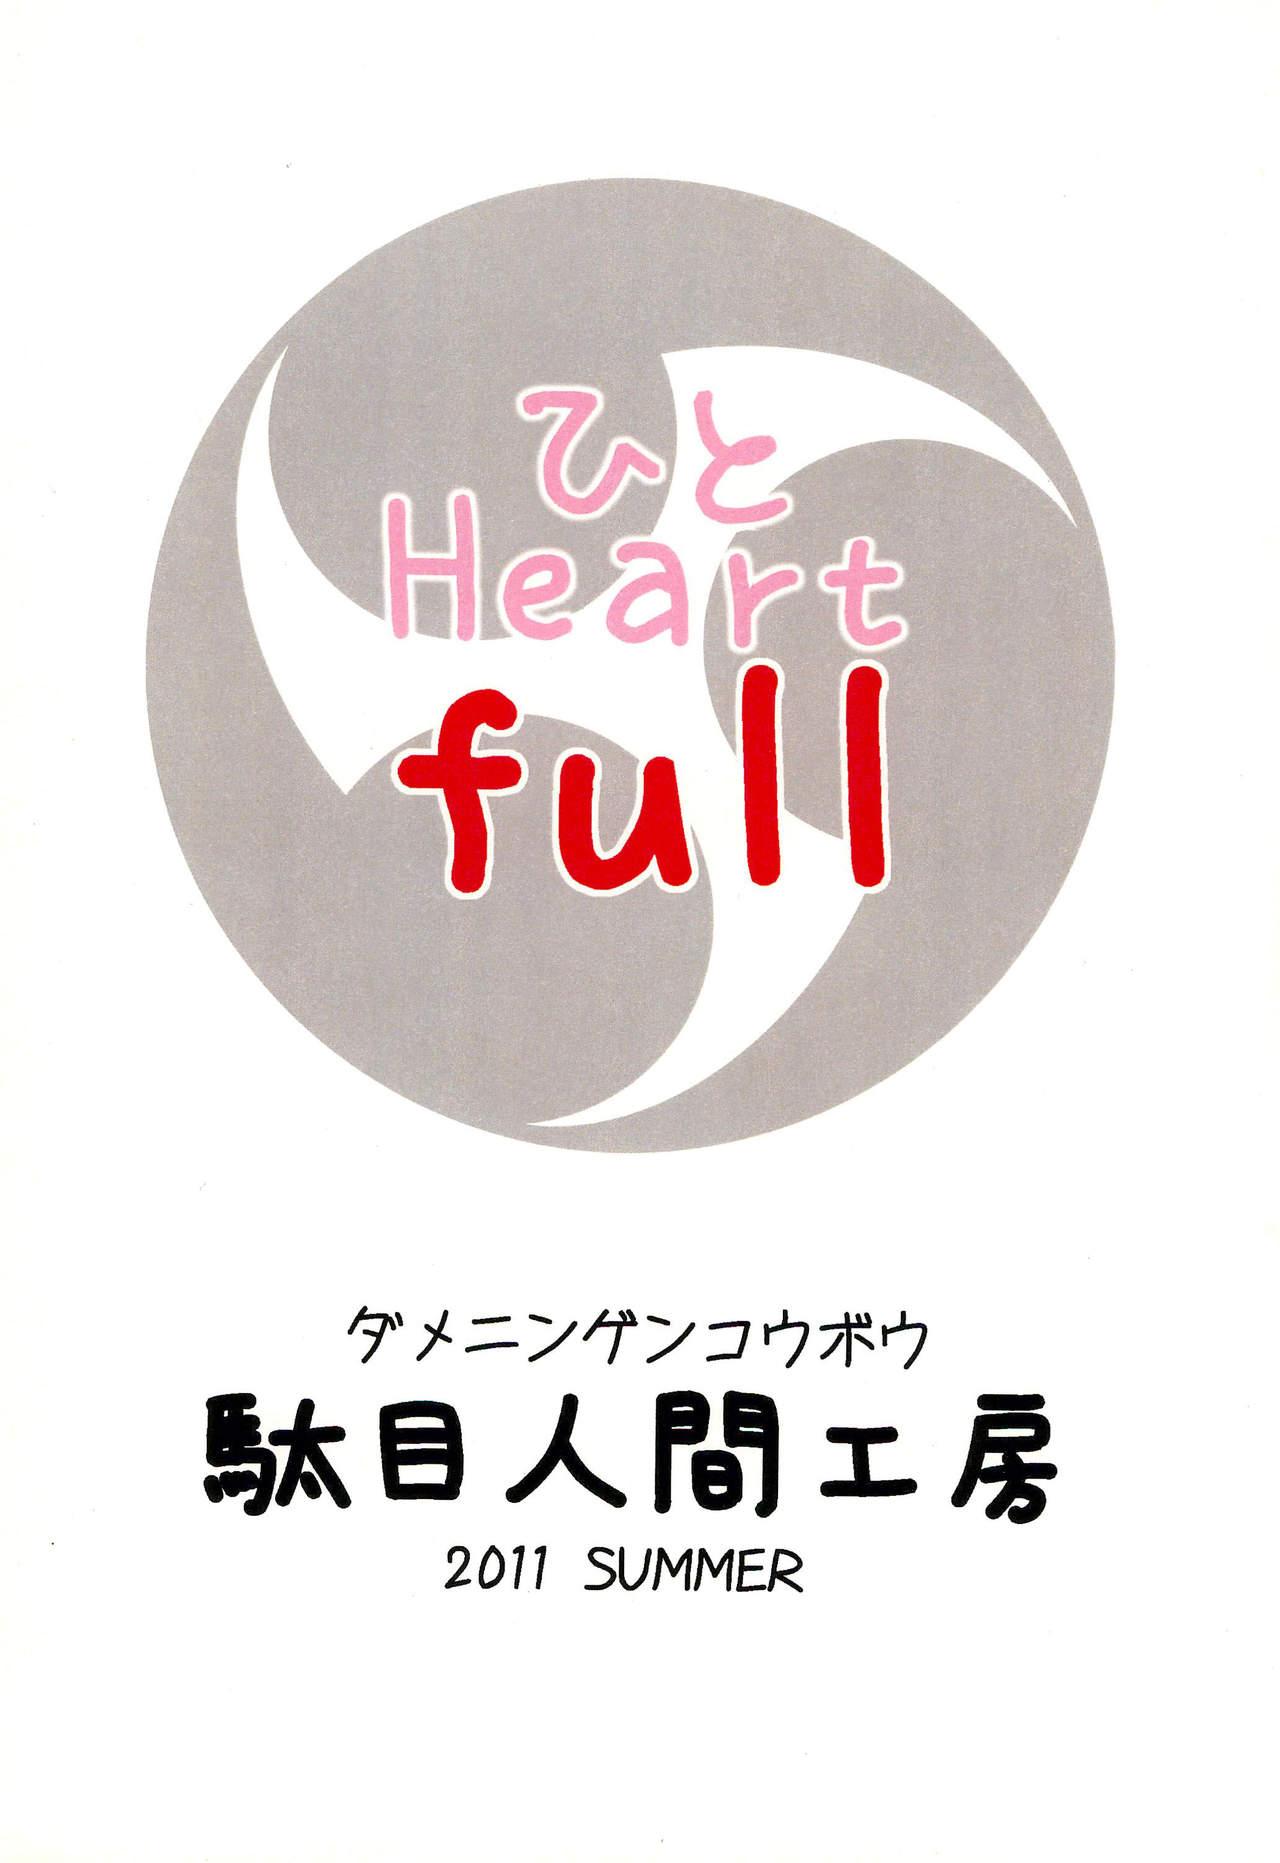 Hito Heart full 31